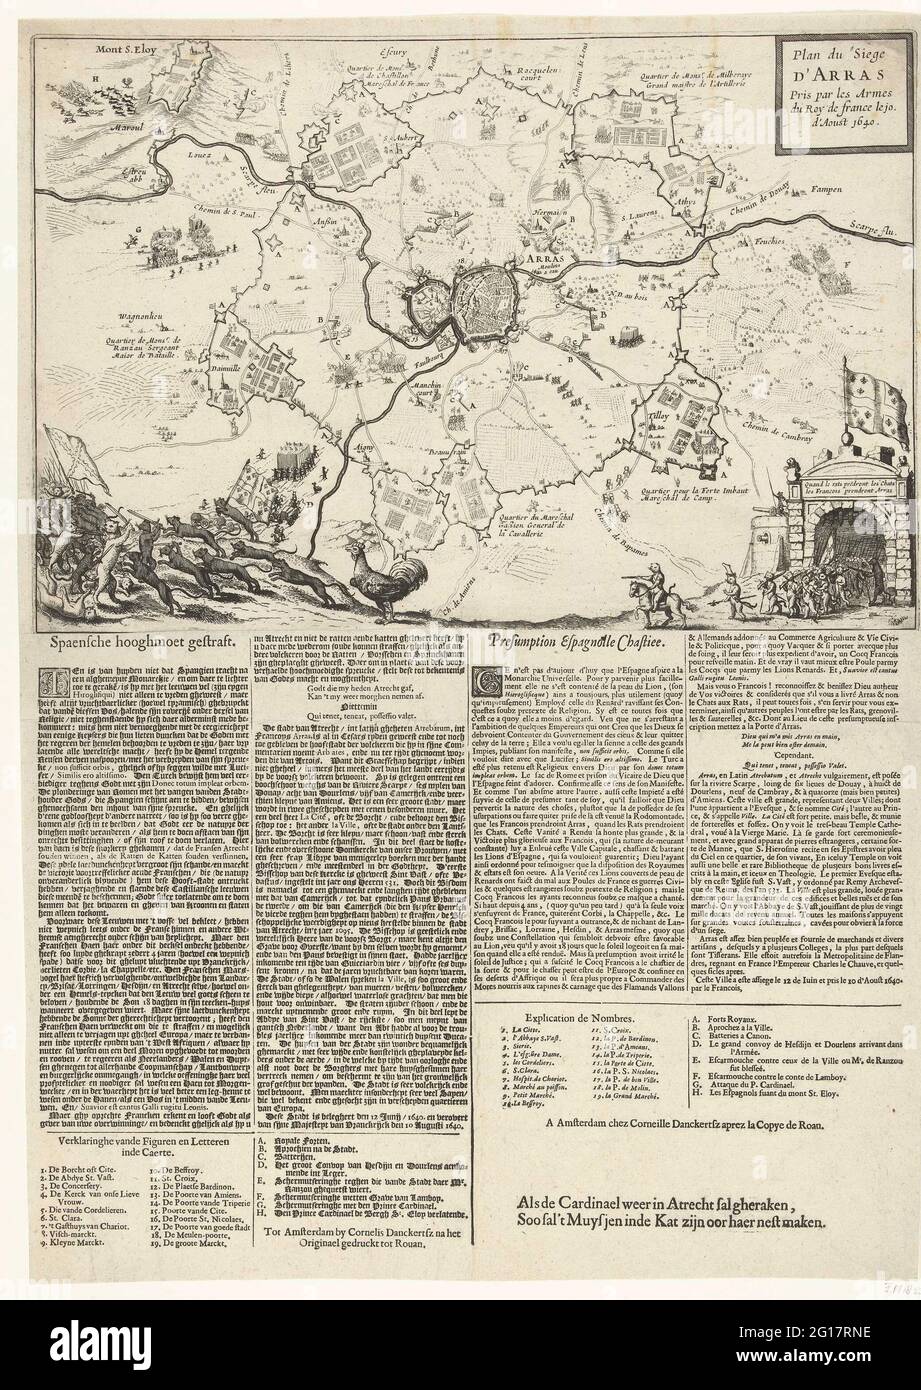 Siege and conquest of Arras by the French, 1640; Plan du Siege d'Arras Pris  Par les Armes du Roy de France Le 10. d'Aoust 1640. Map of the topping and  conquest of